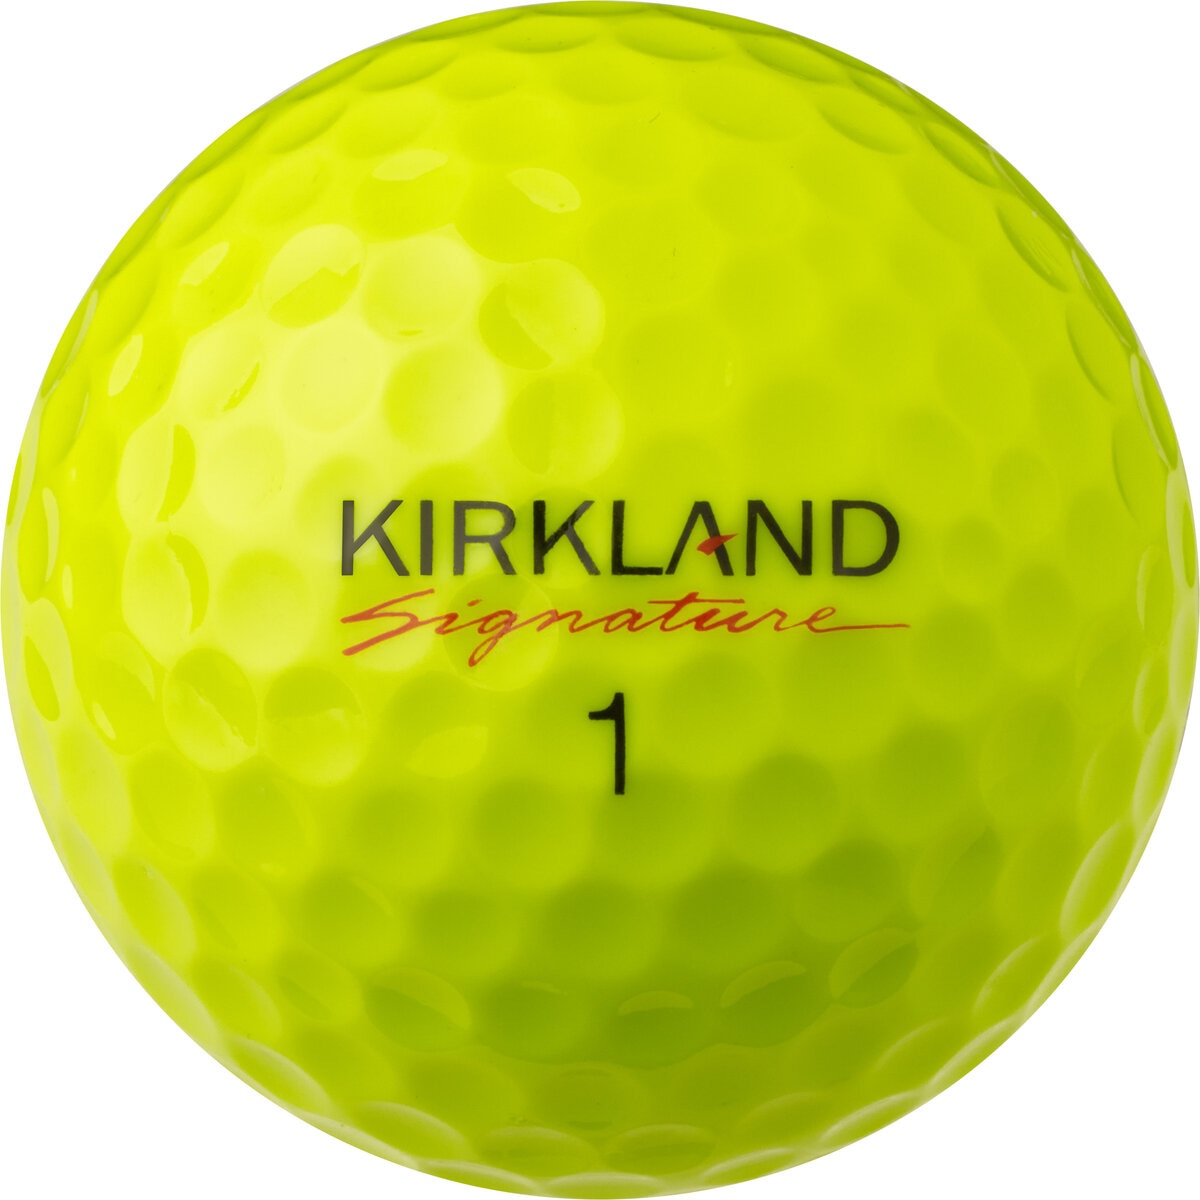 カークランドシグネチャー 3ピースゴルフボール バージョン2.0 イエロー 24個入り